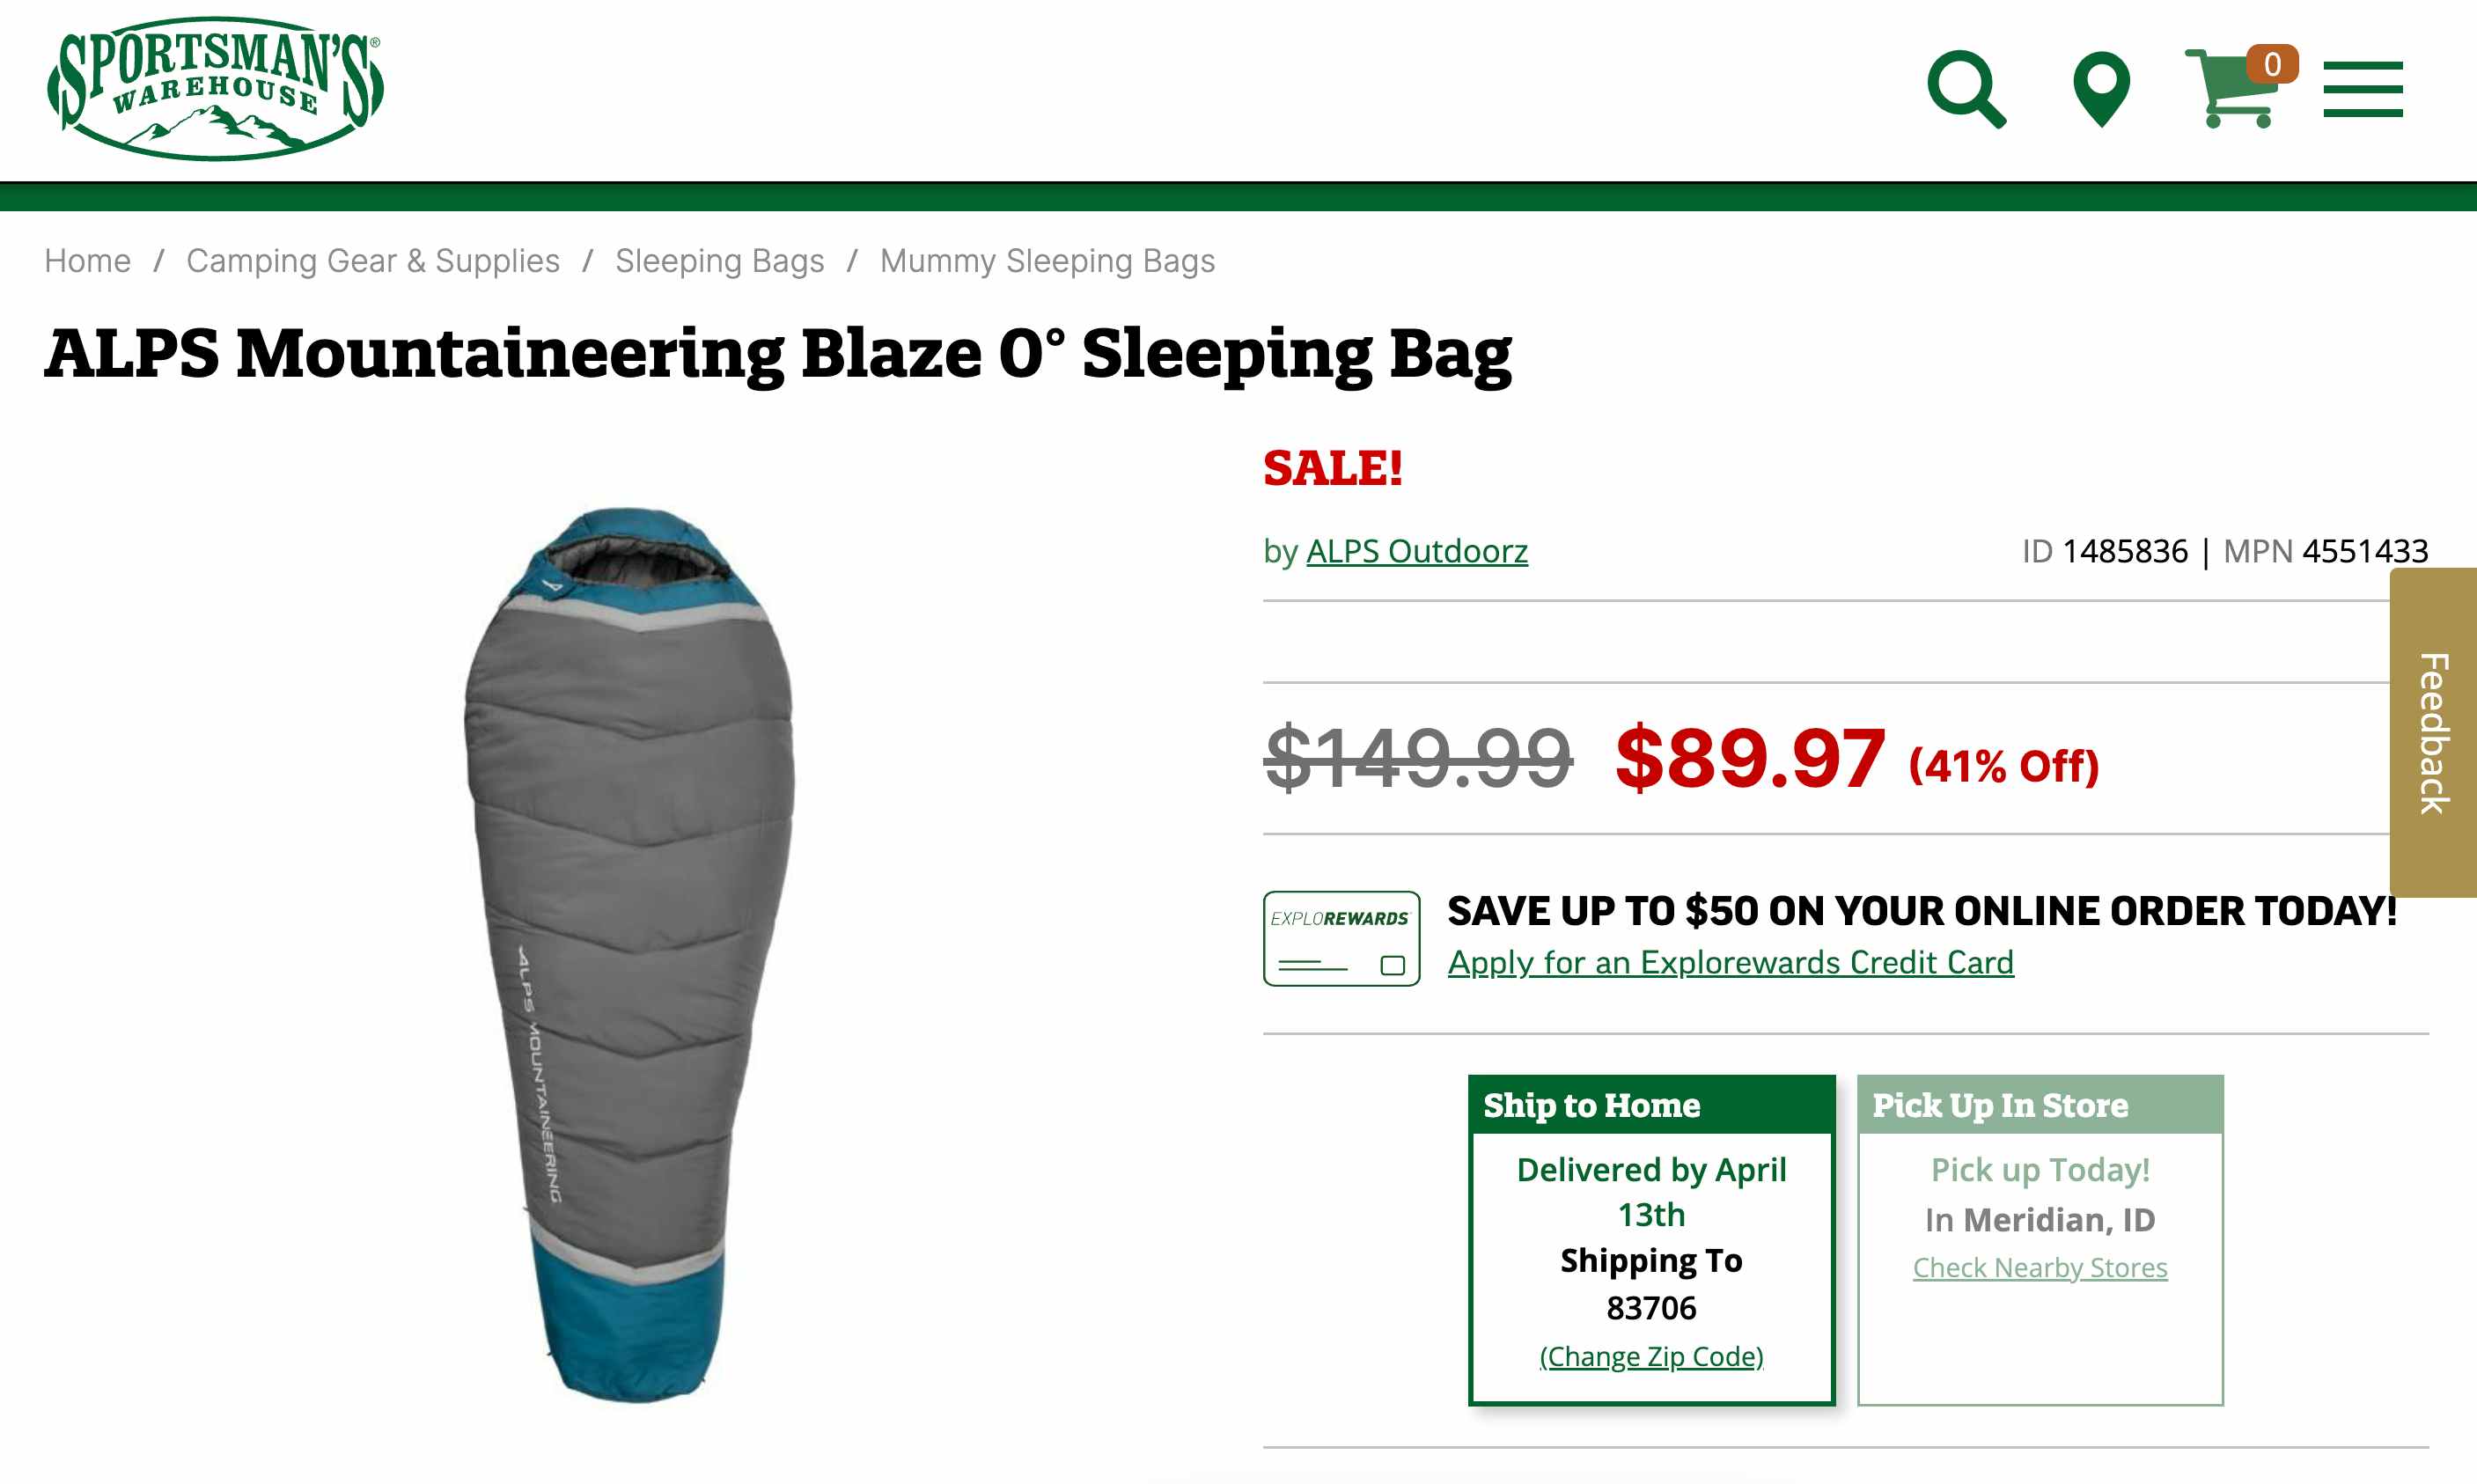 A screenshot of a 0° sleeping bag from sportsman's warehouse website